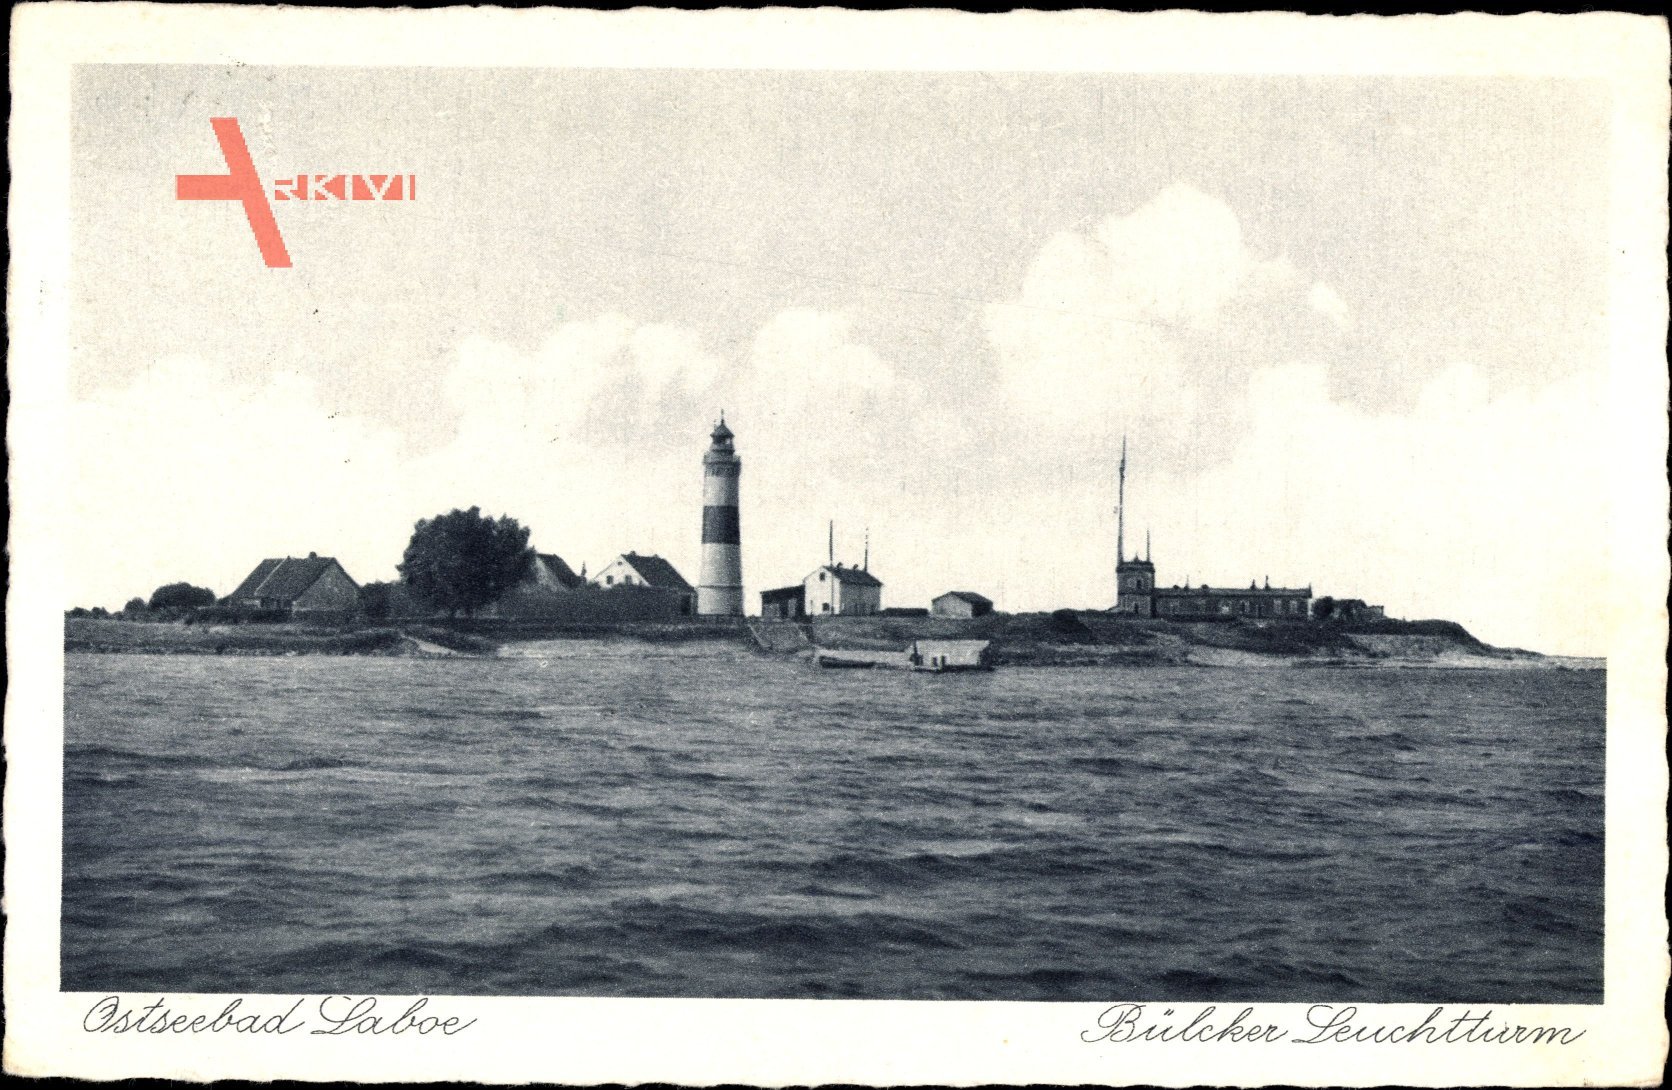 Laboe Probstei Ostsee, Blick vom Wasser auf den Bülcker Leuchtturm